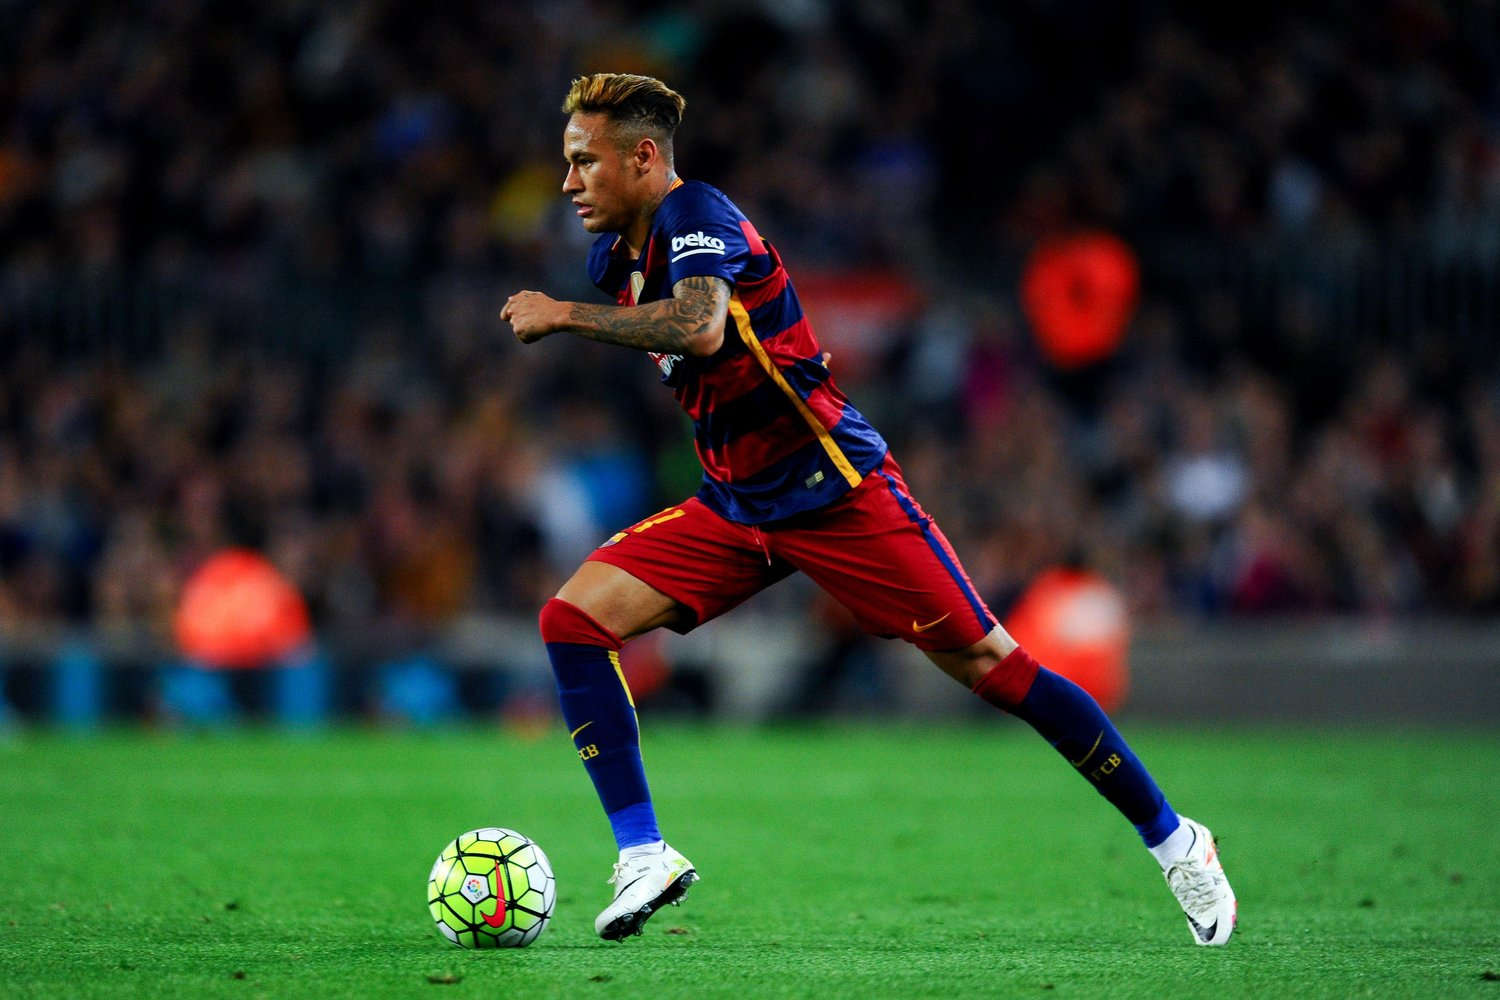 neymar wallpaper,player,sports,soccer player,sports equipment,football player